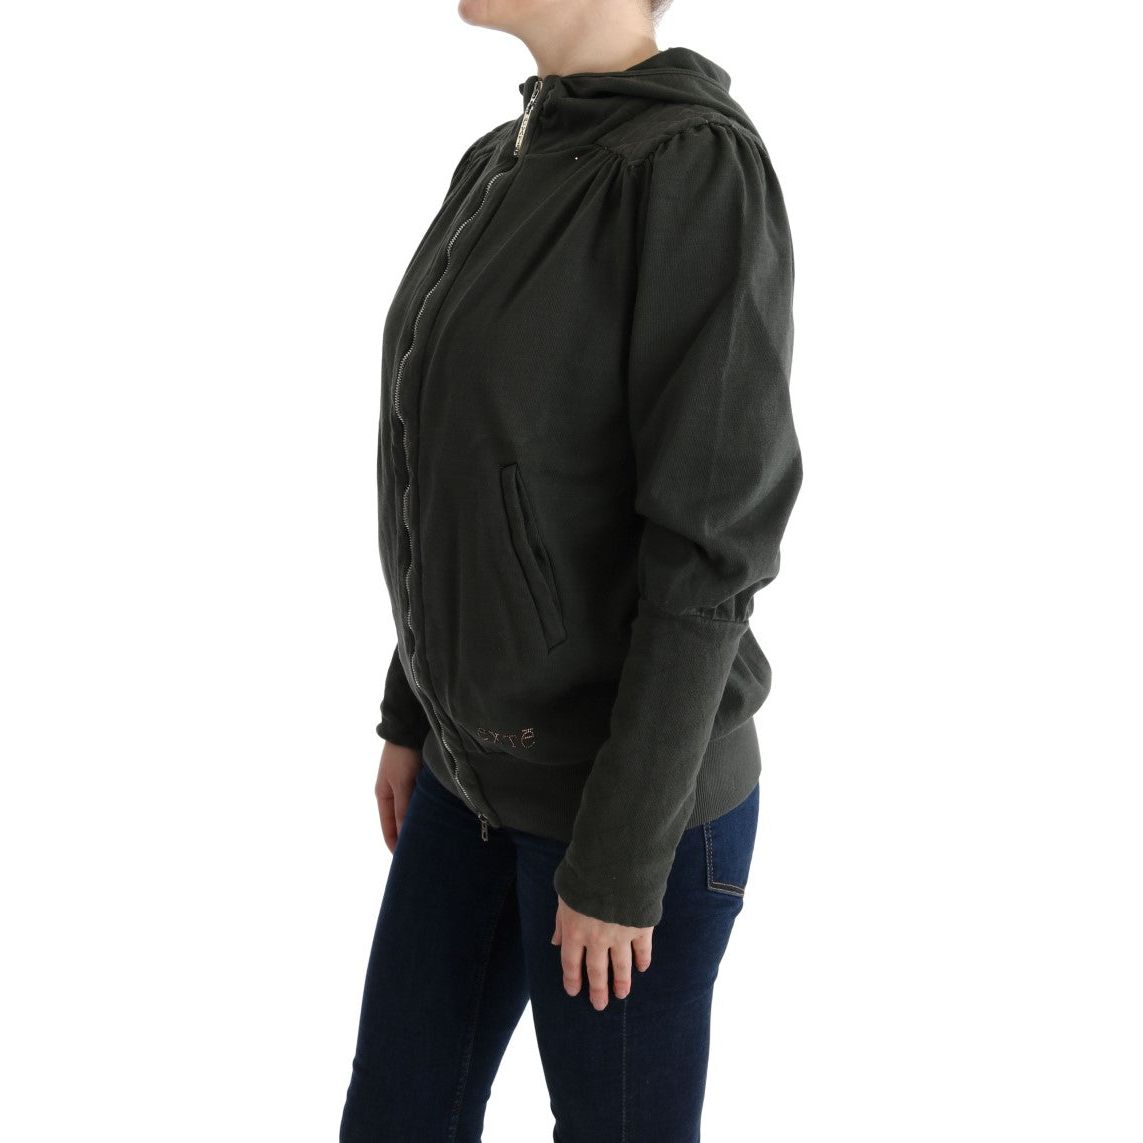 Exte | Gray Top Hooded Cotton Zipper Sweater | McRichard Designer Brands